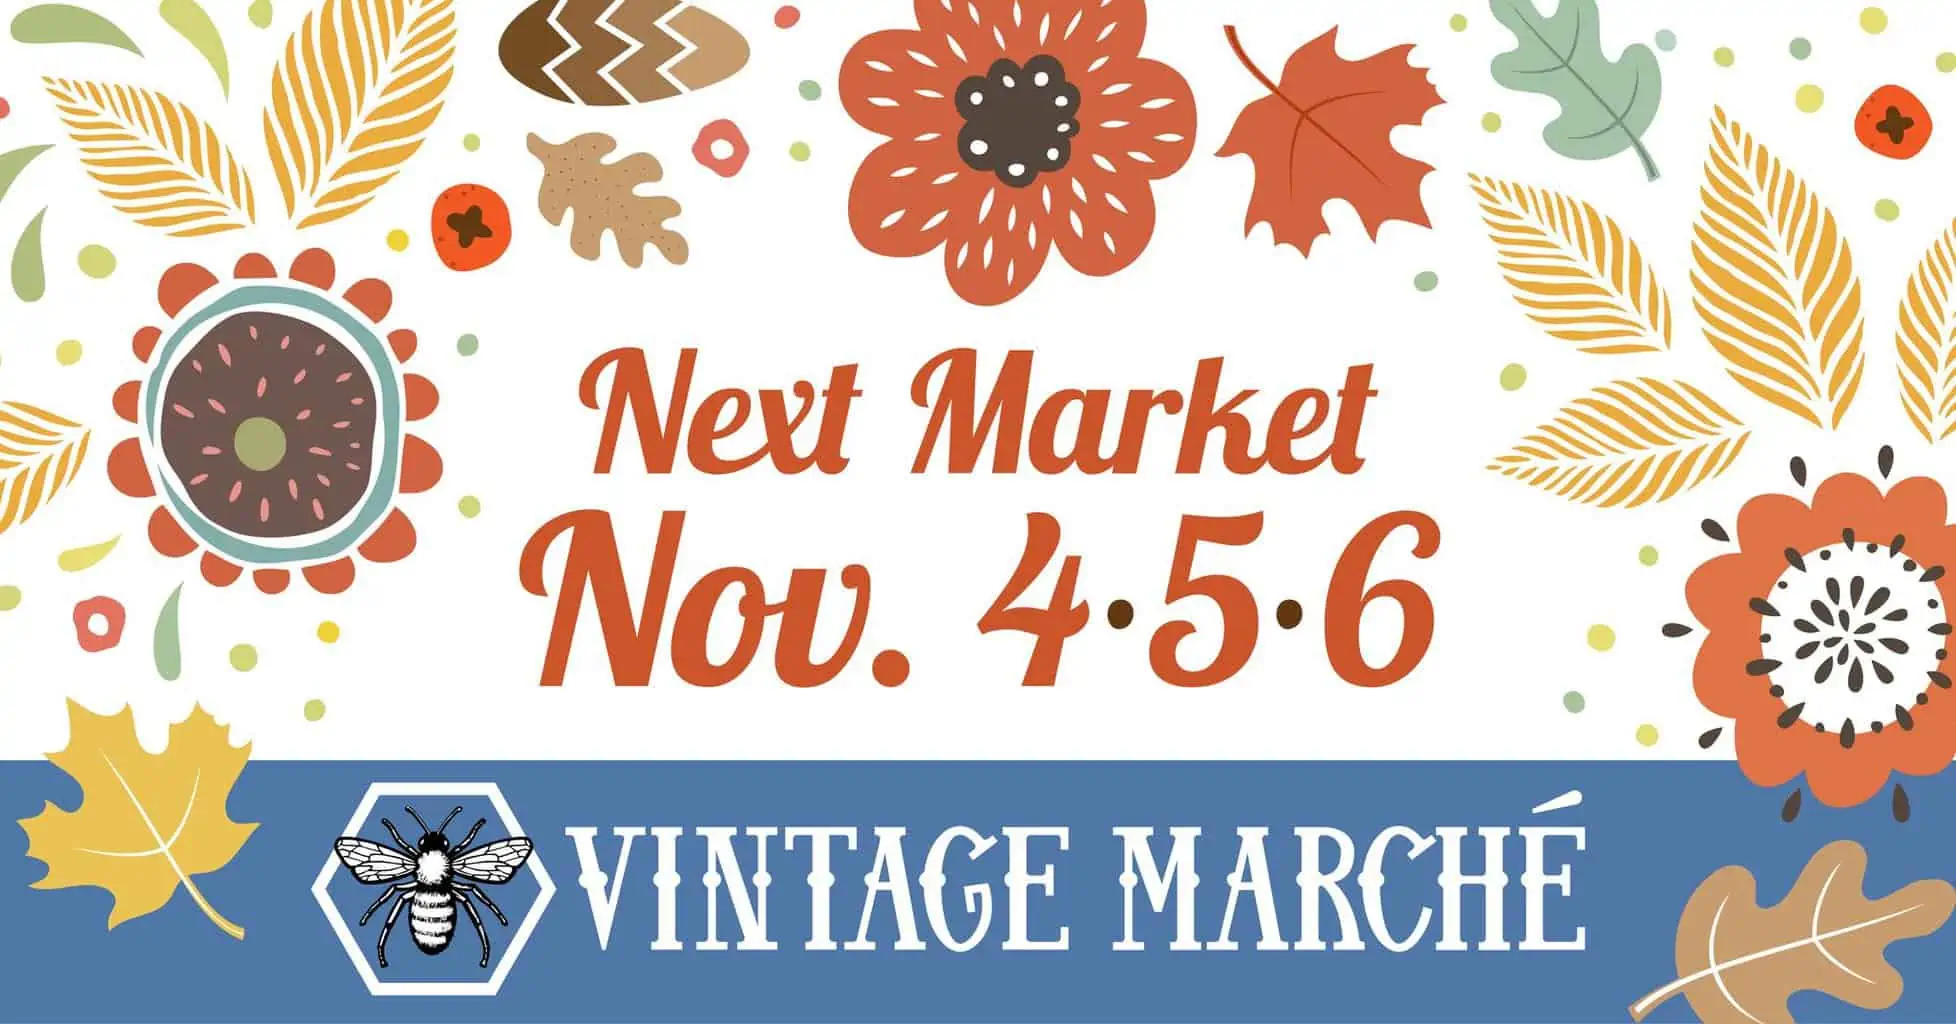 November Vintage Market